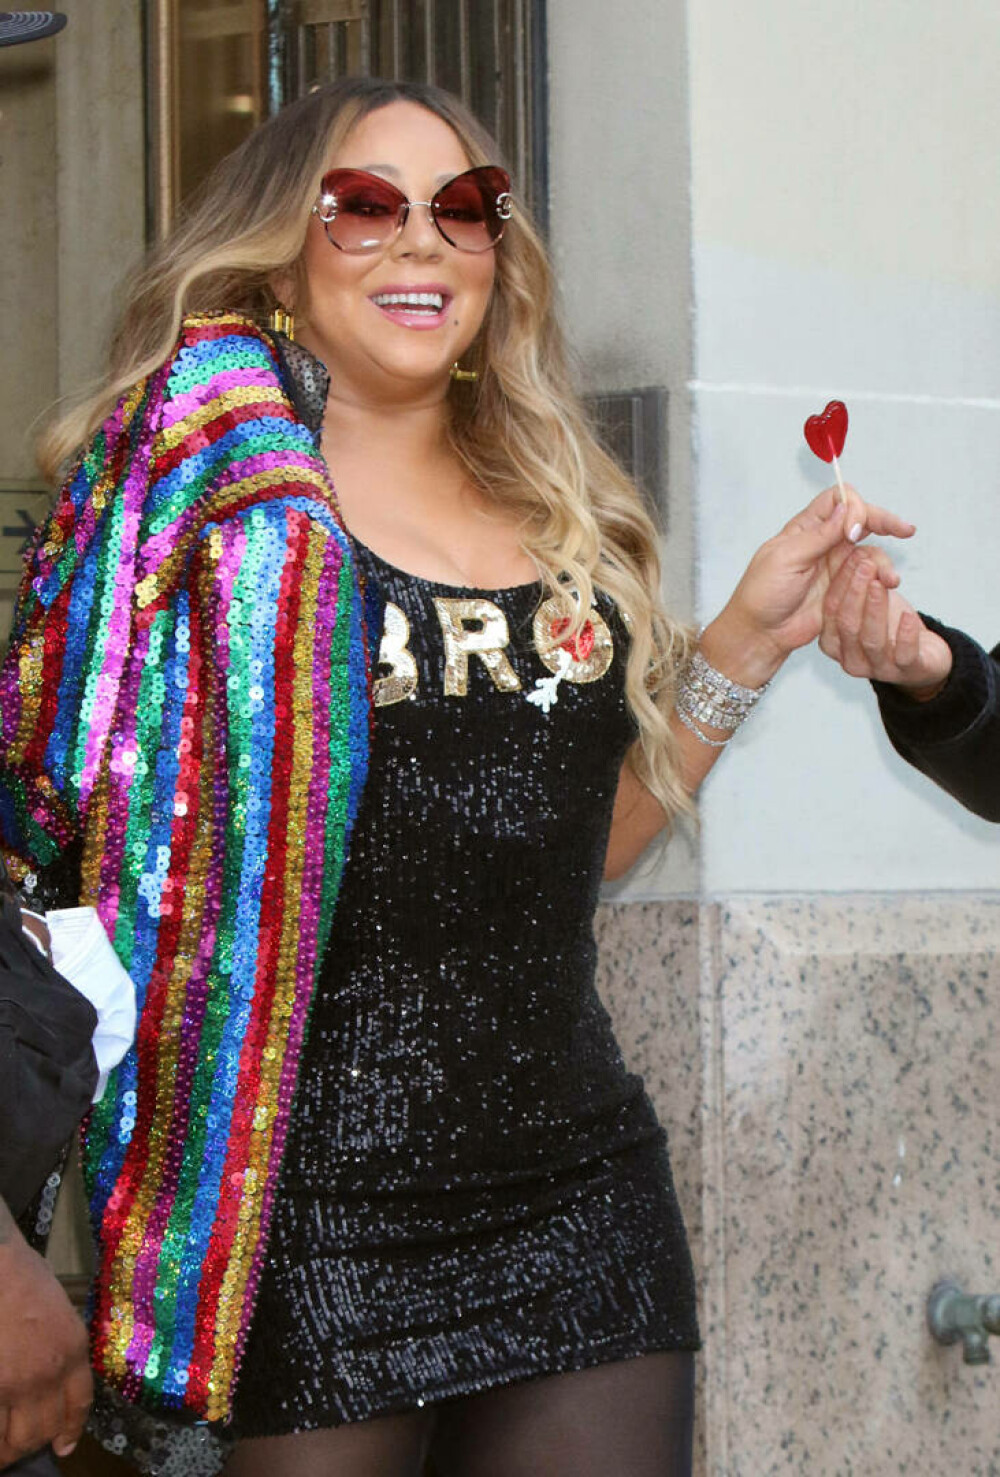 Cum arată acum Mariah Carey. Cântăreața a pierdut lupta cu kilogramele - GALERIE FOTO - Imaginea 3